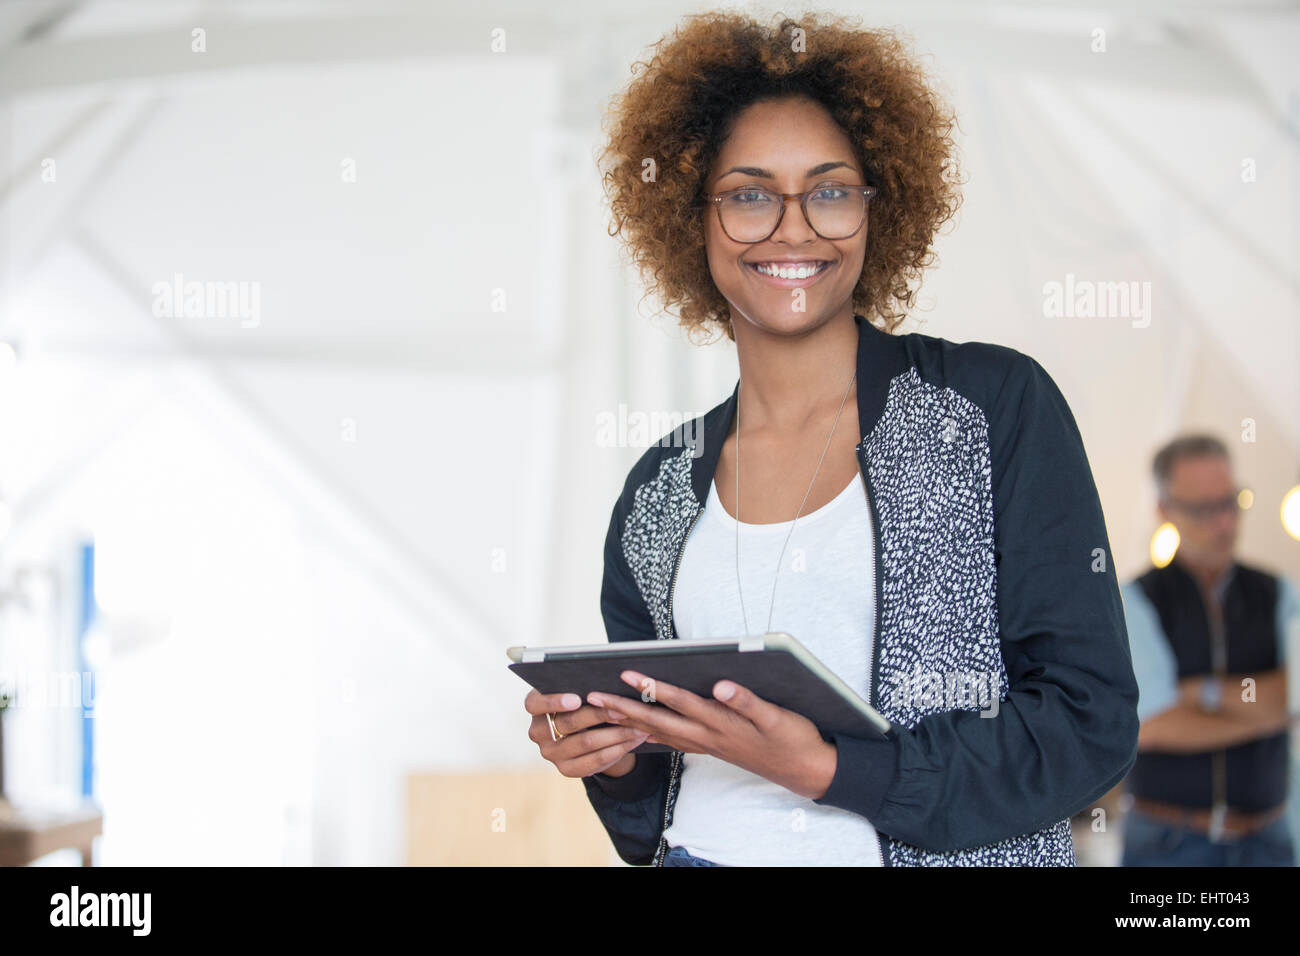 Portrait of smiling office worker holding digital tablet Banque D'Images